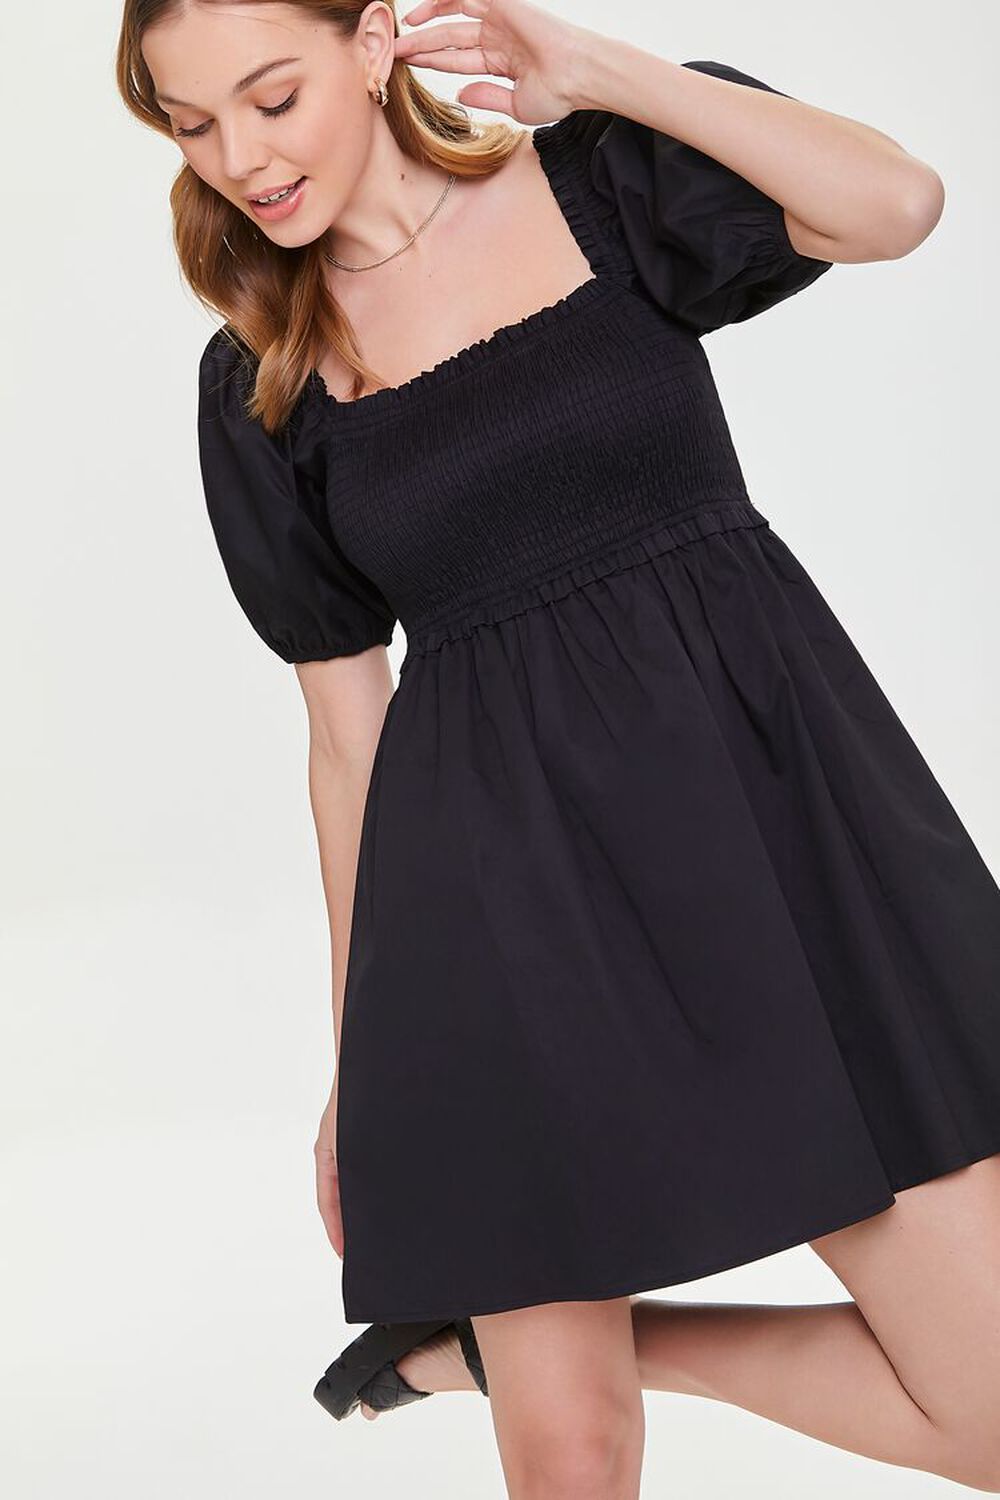 BLACK Smocked Puff Sleeve Mini Dress, image 1